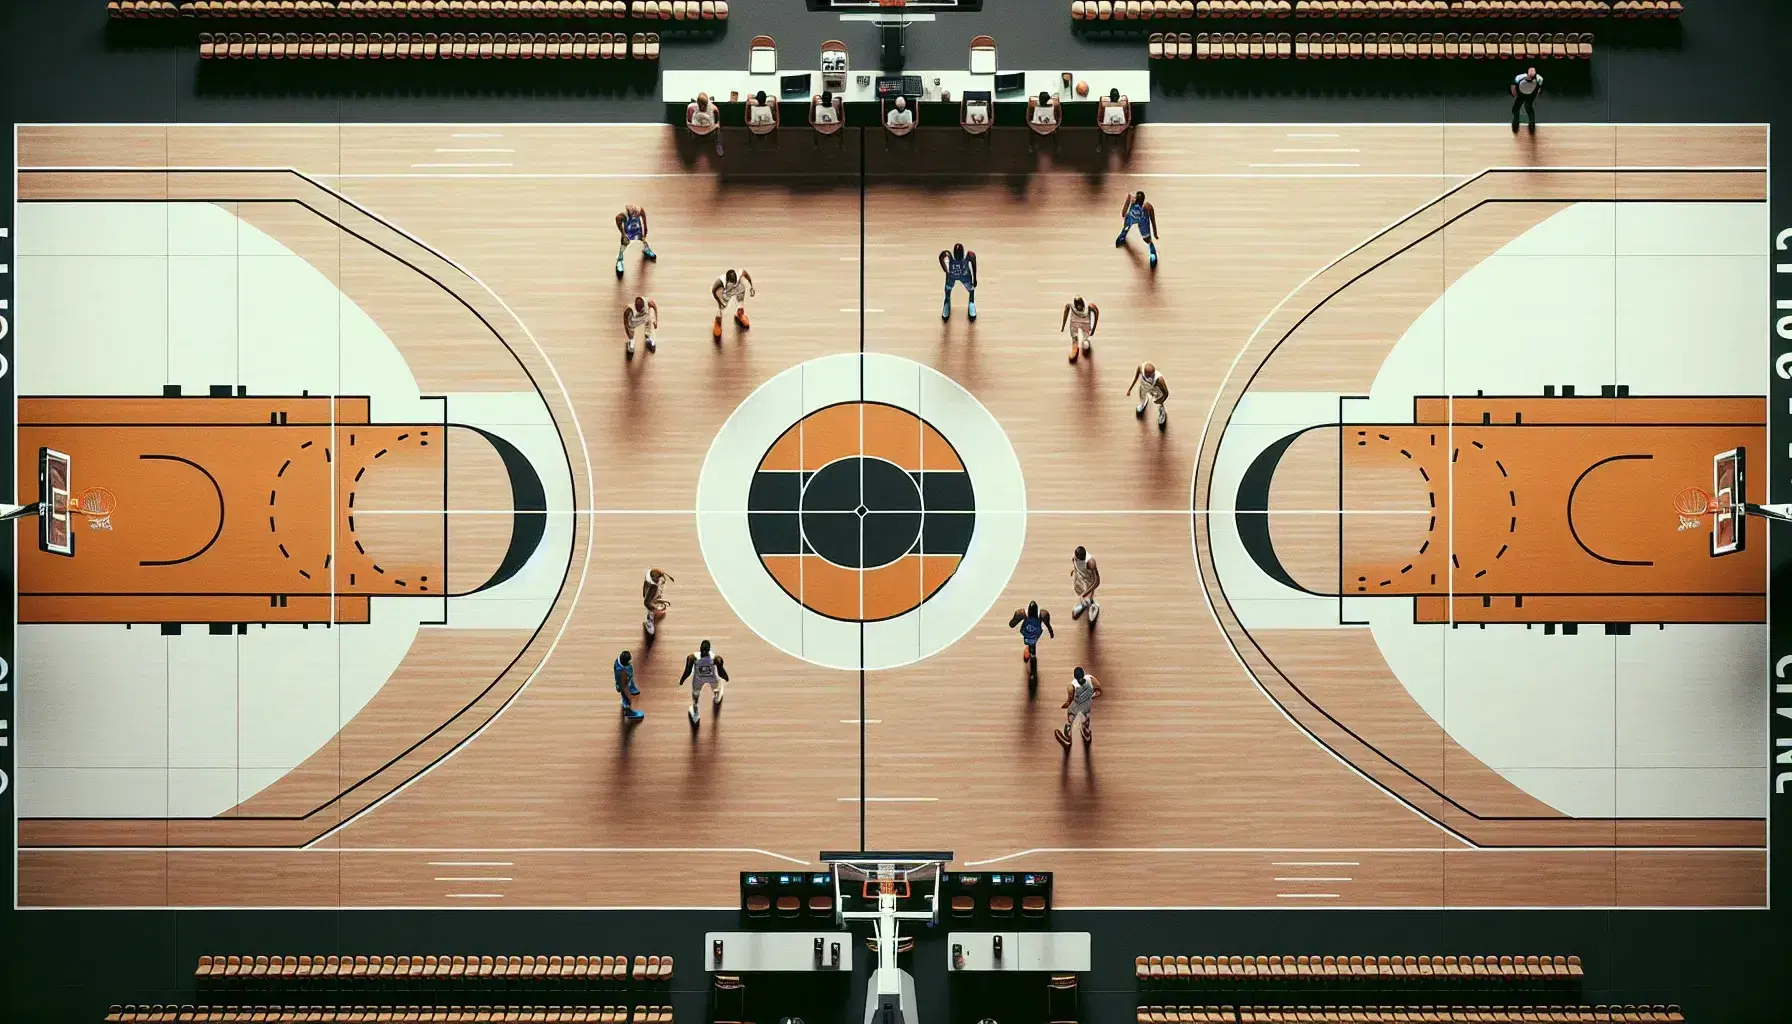 Vista aérea de una cancha de baloncesto profesional con jugadores en acción, aros con tableros transparentes y líneas de juego marcadas, sin público presente.